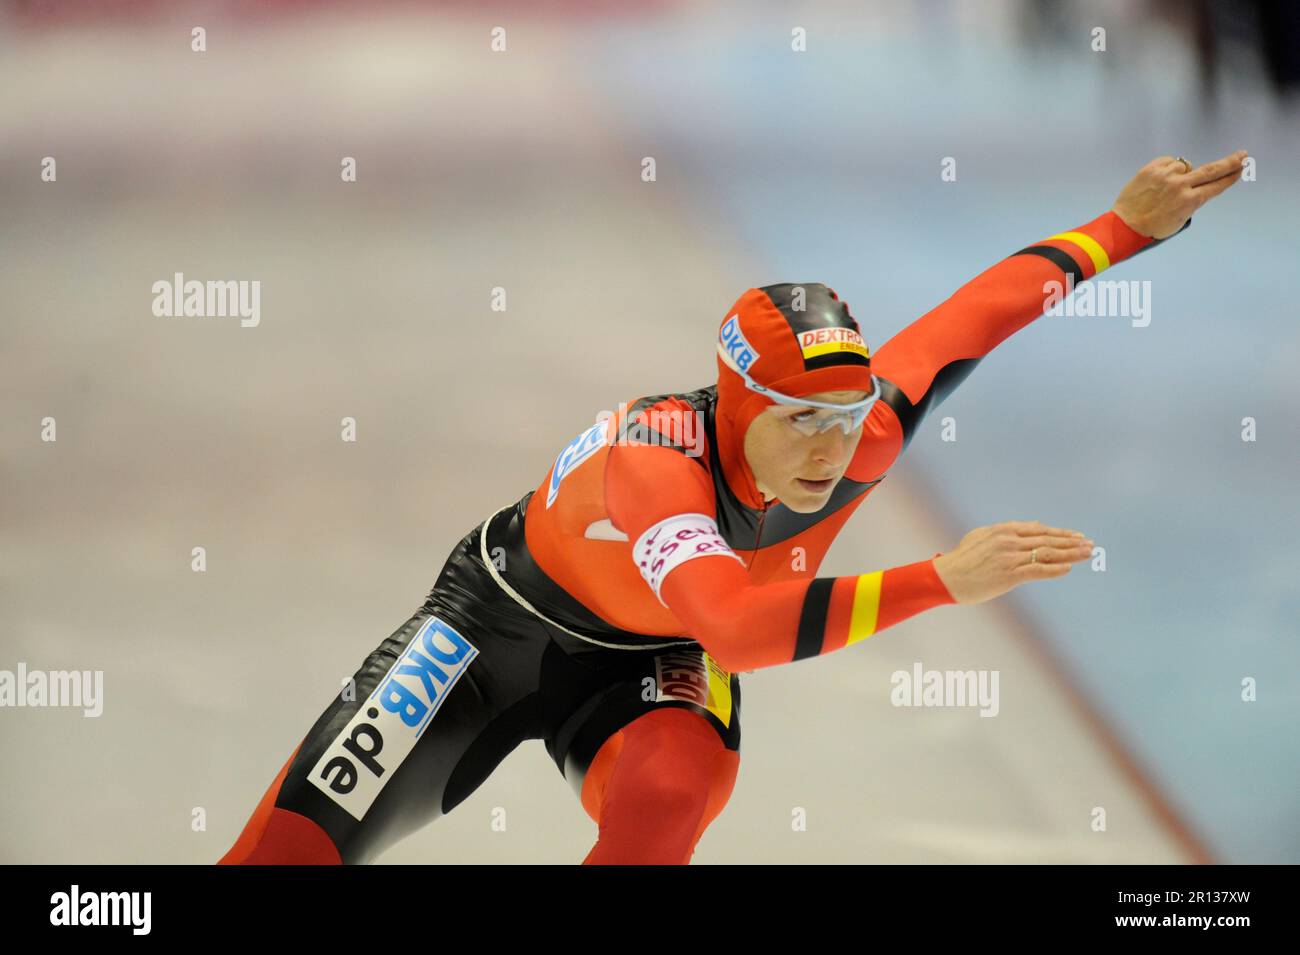 Anni Friesinger-Postma Aktion über 1500m beim Essent ISU Welt Cup Eisschnelllauf 13.11.2009 in Heerenveen. Stock Photo